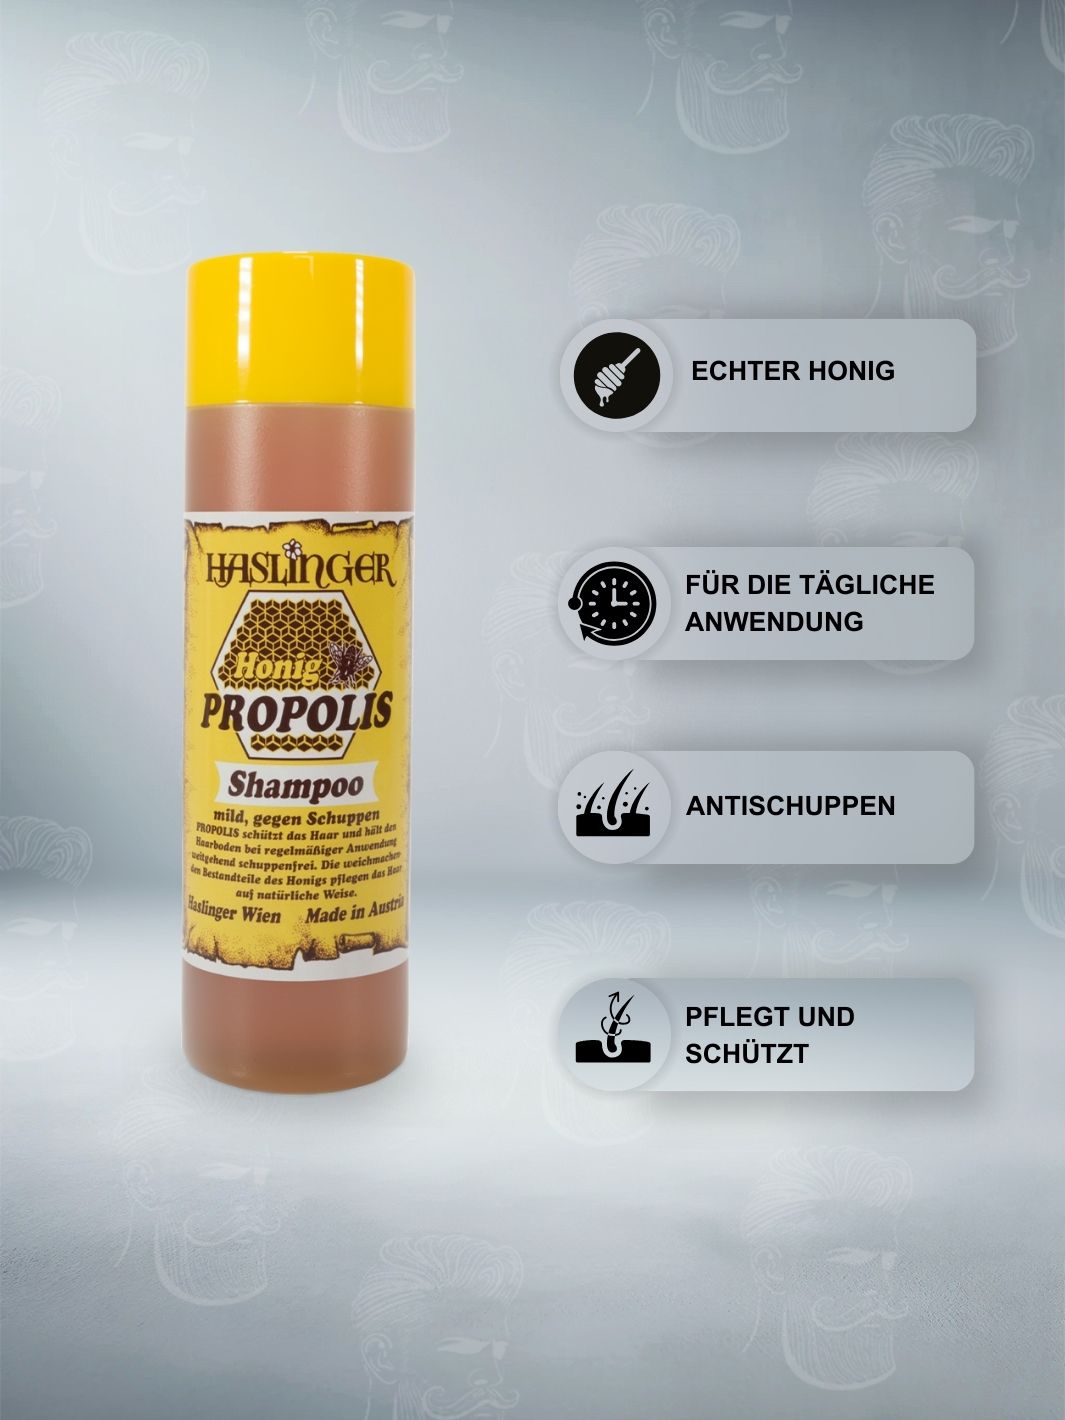 Haslinger Honig Propolis Shampoo 200ml, angereichert mit echtem Honig, für die tägliche Anwendung konzipiert, mit antischuppender Wirkung und pflegt sowie schützt das Haar.